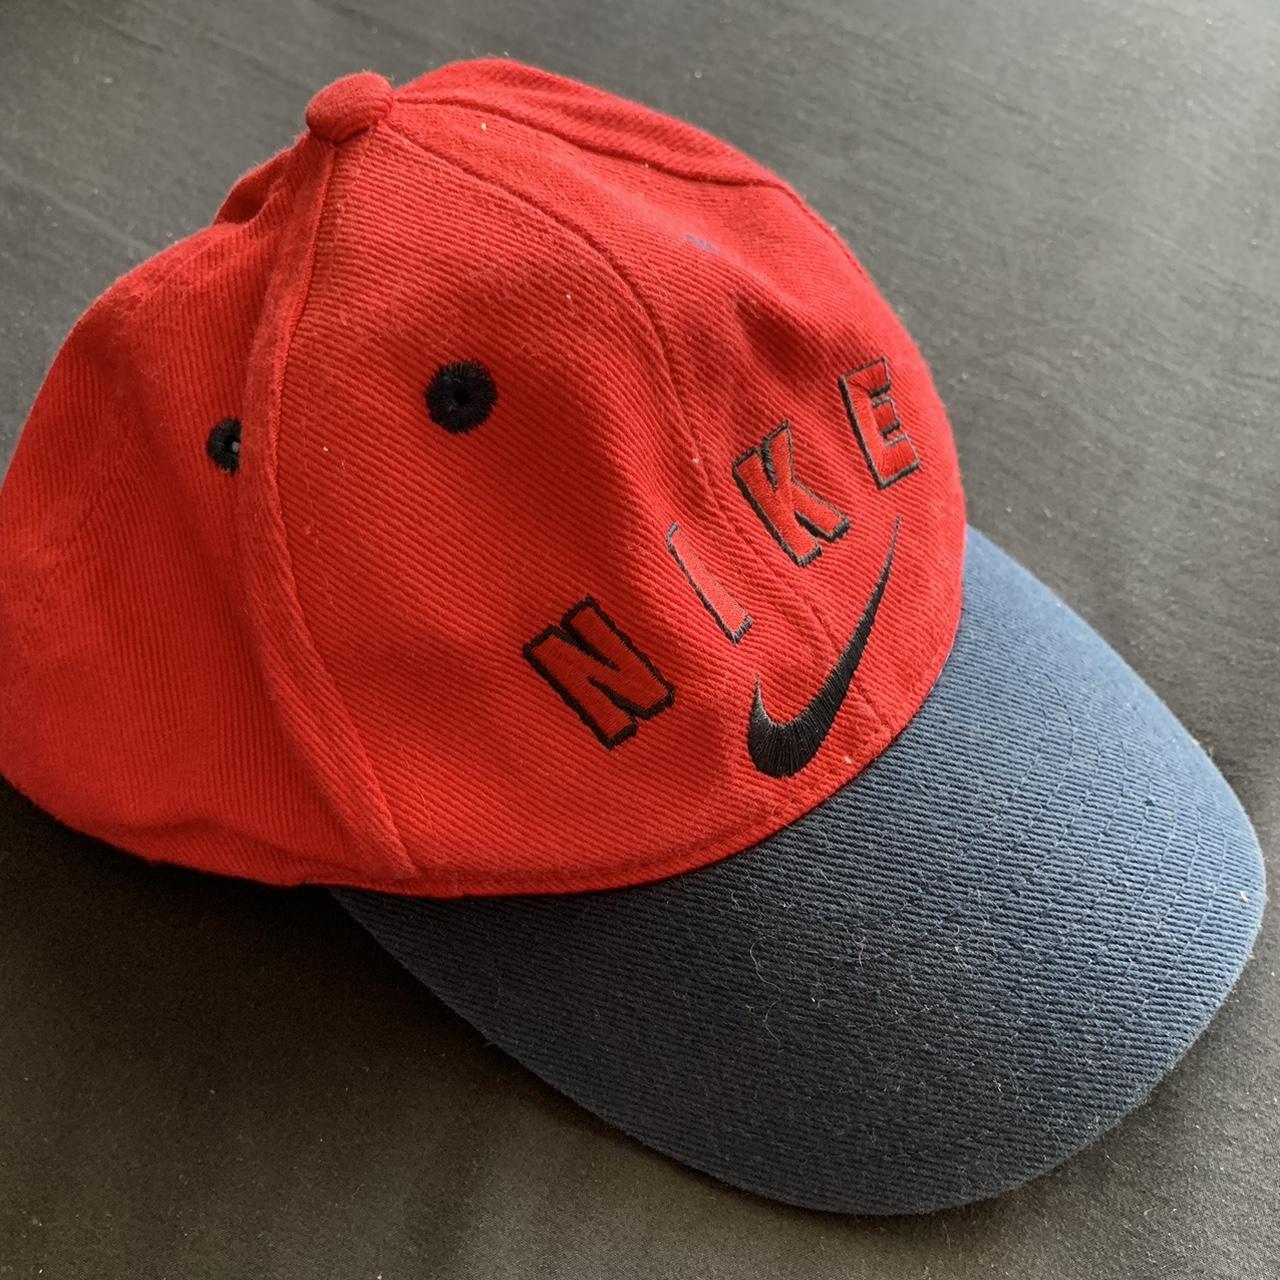 Nike Men's Caps - Red